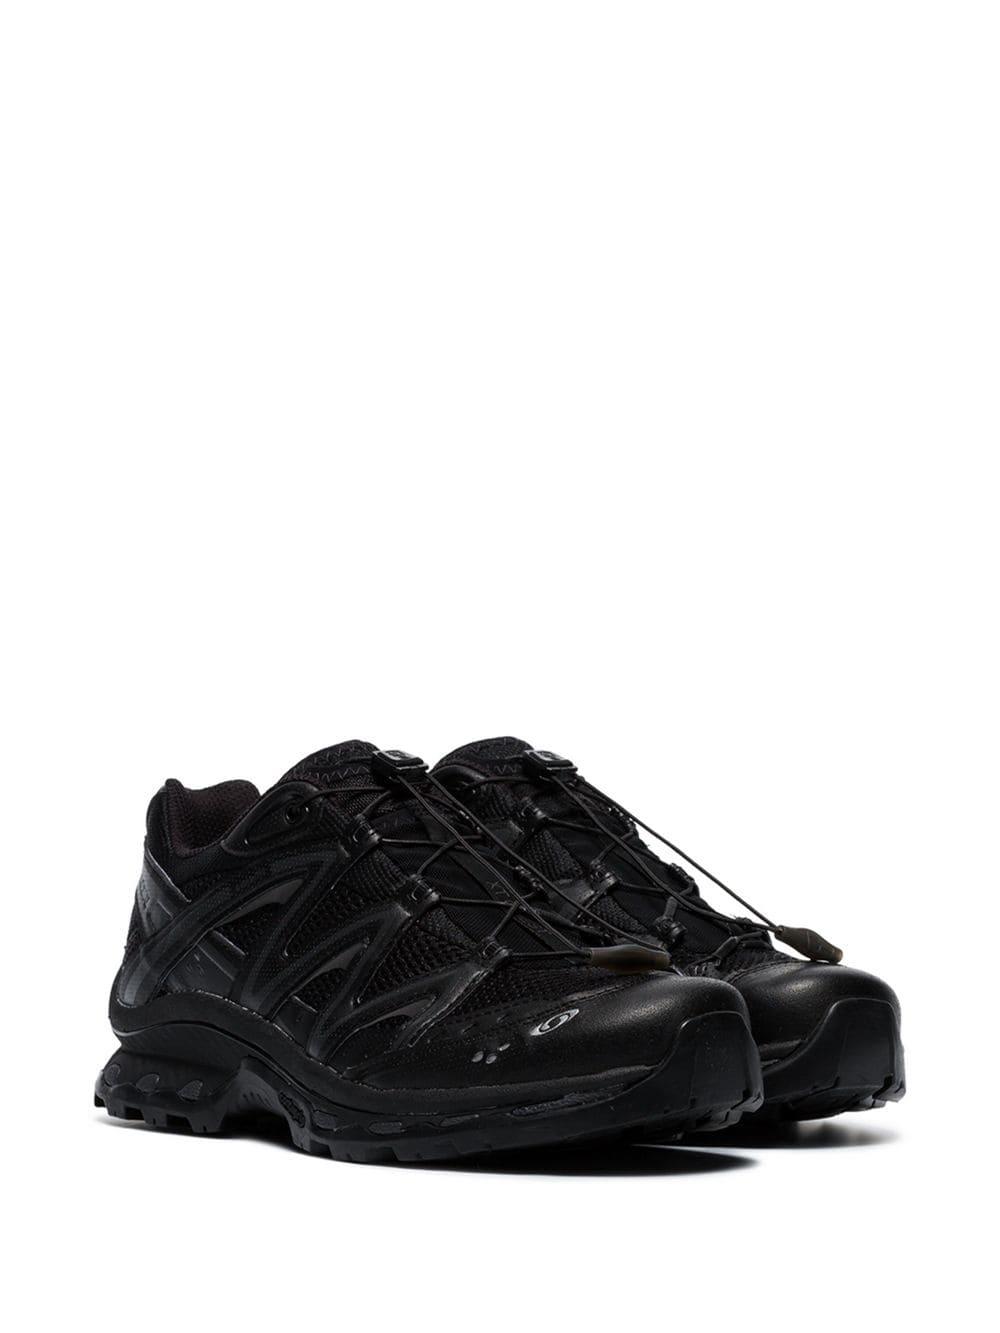 Salomon Lab Black Xt-quest Advanced Low Top Sneakers for Men | Lyst